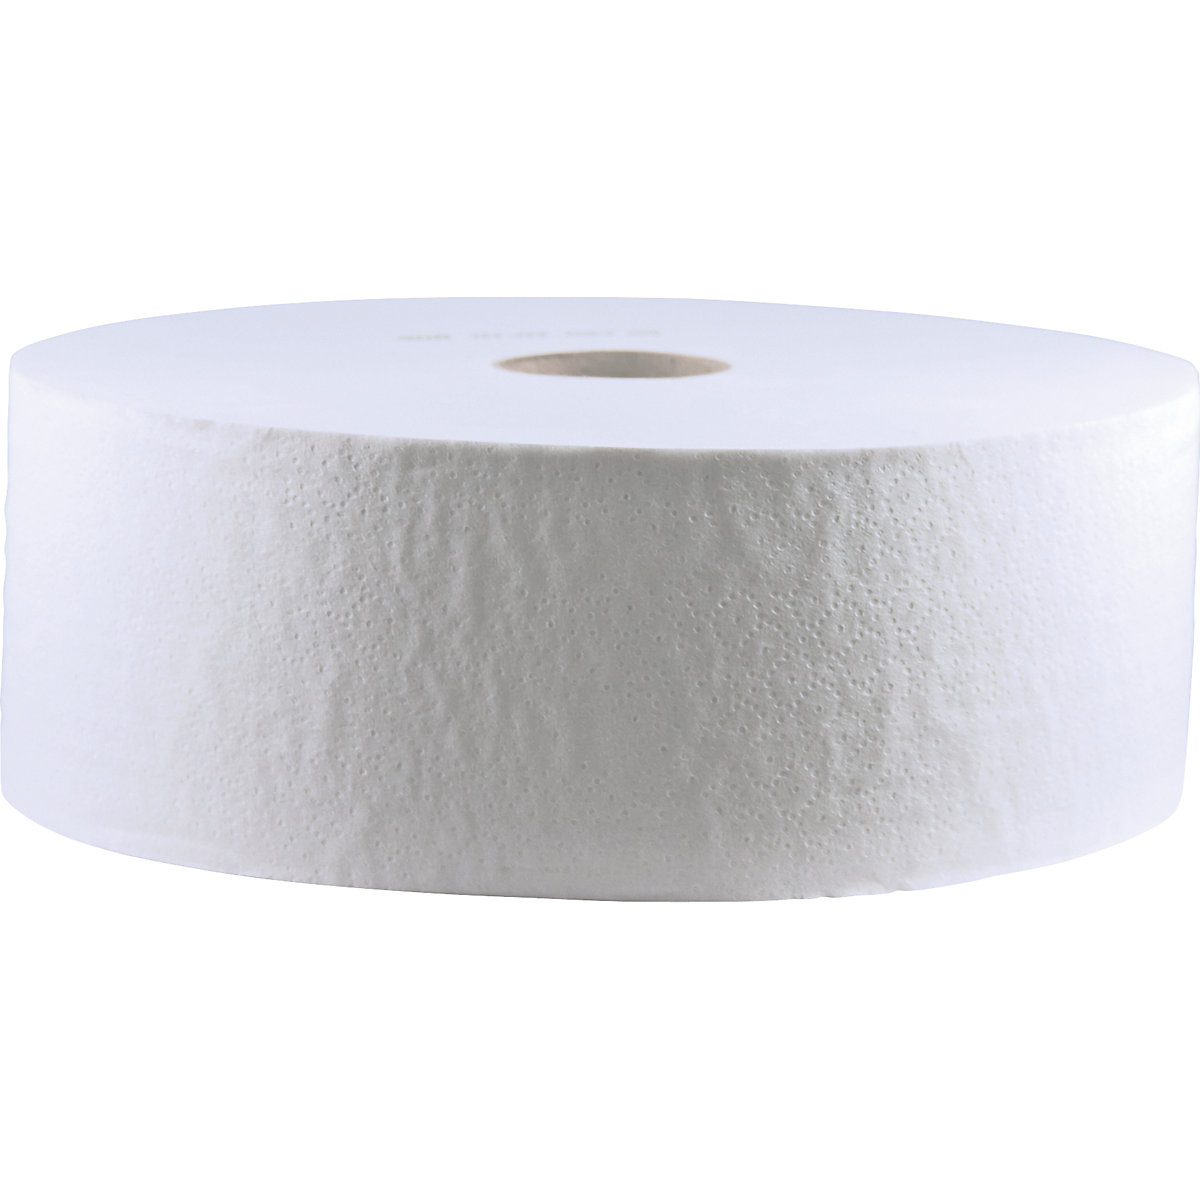 Toaletní papír ve velkých rolích - CWS